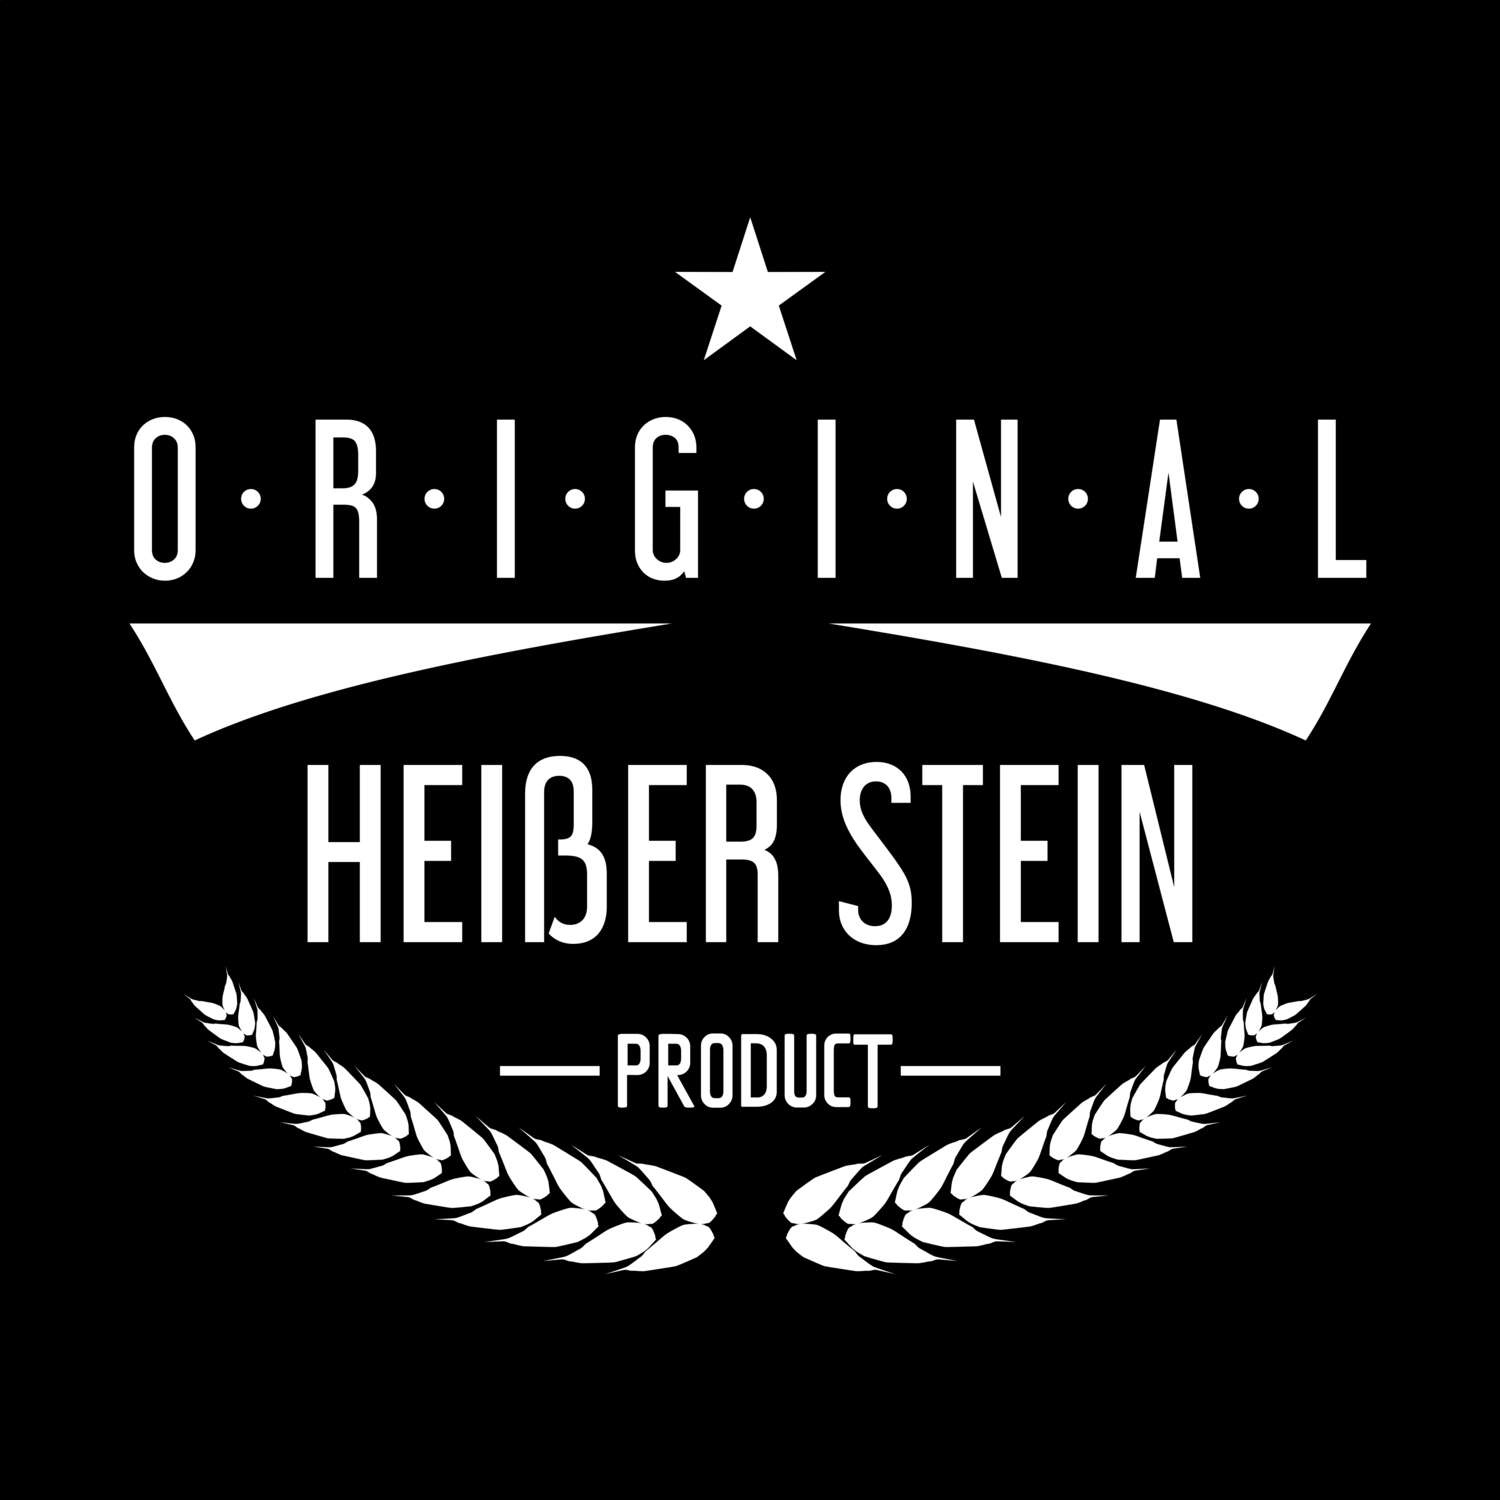 Heißer Stein T-Shirt »Original Product«